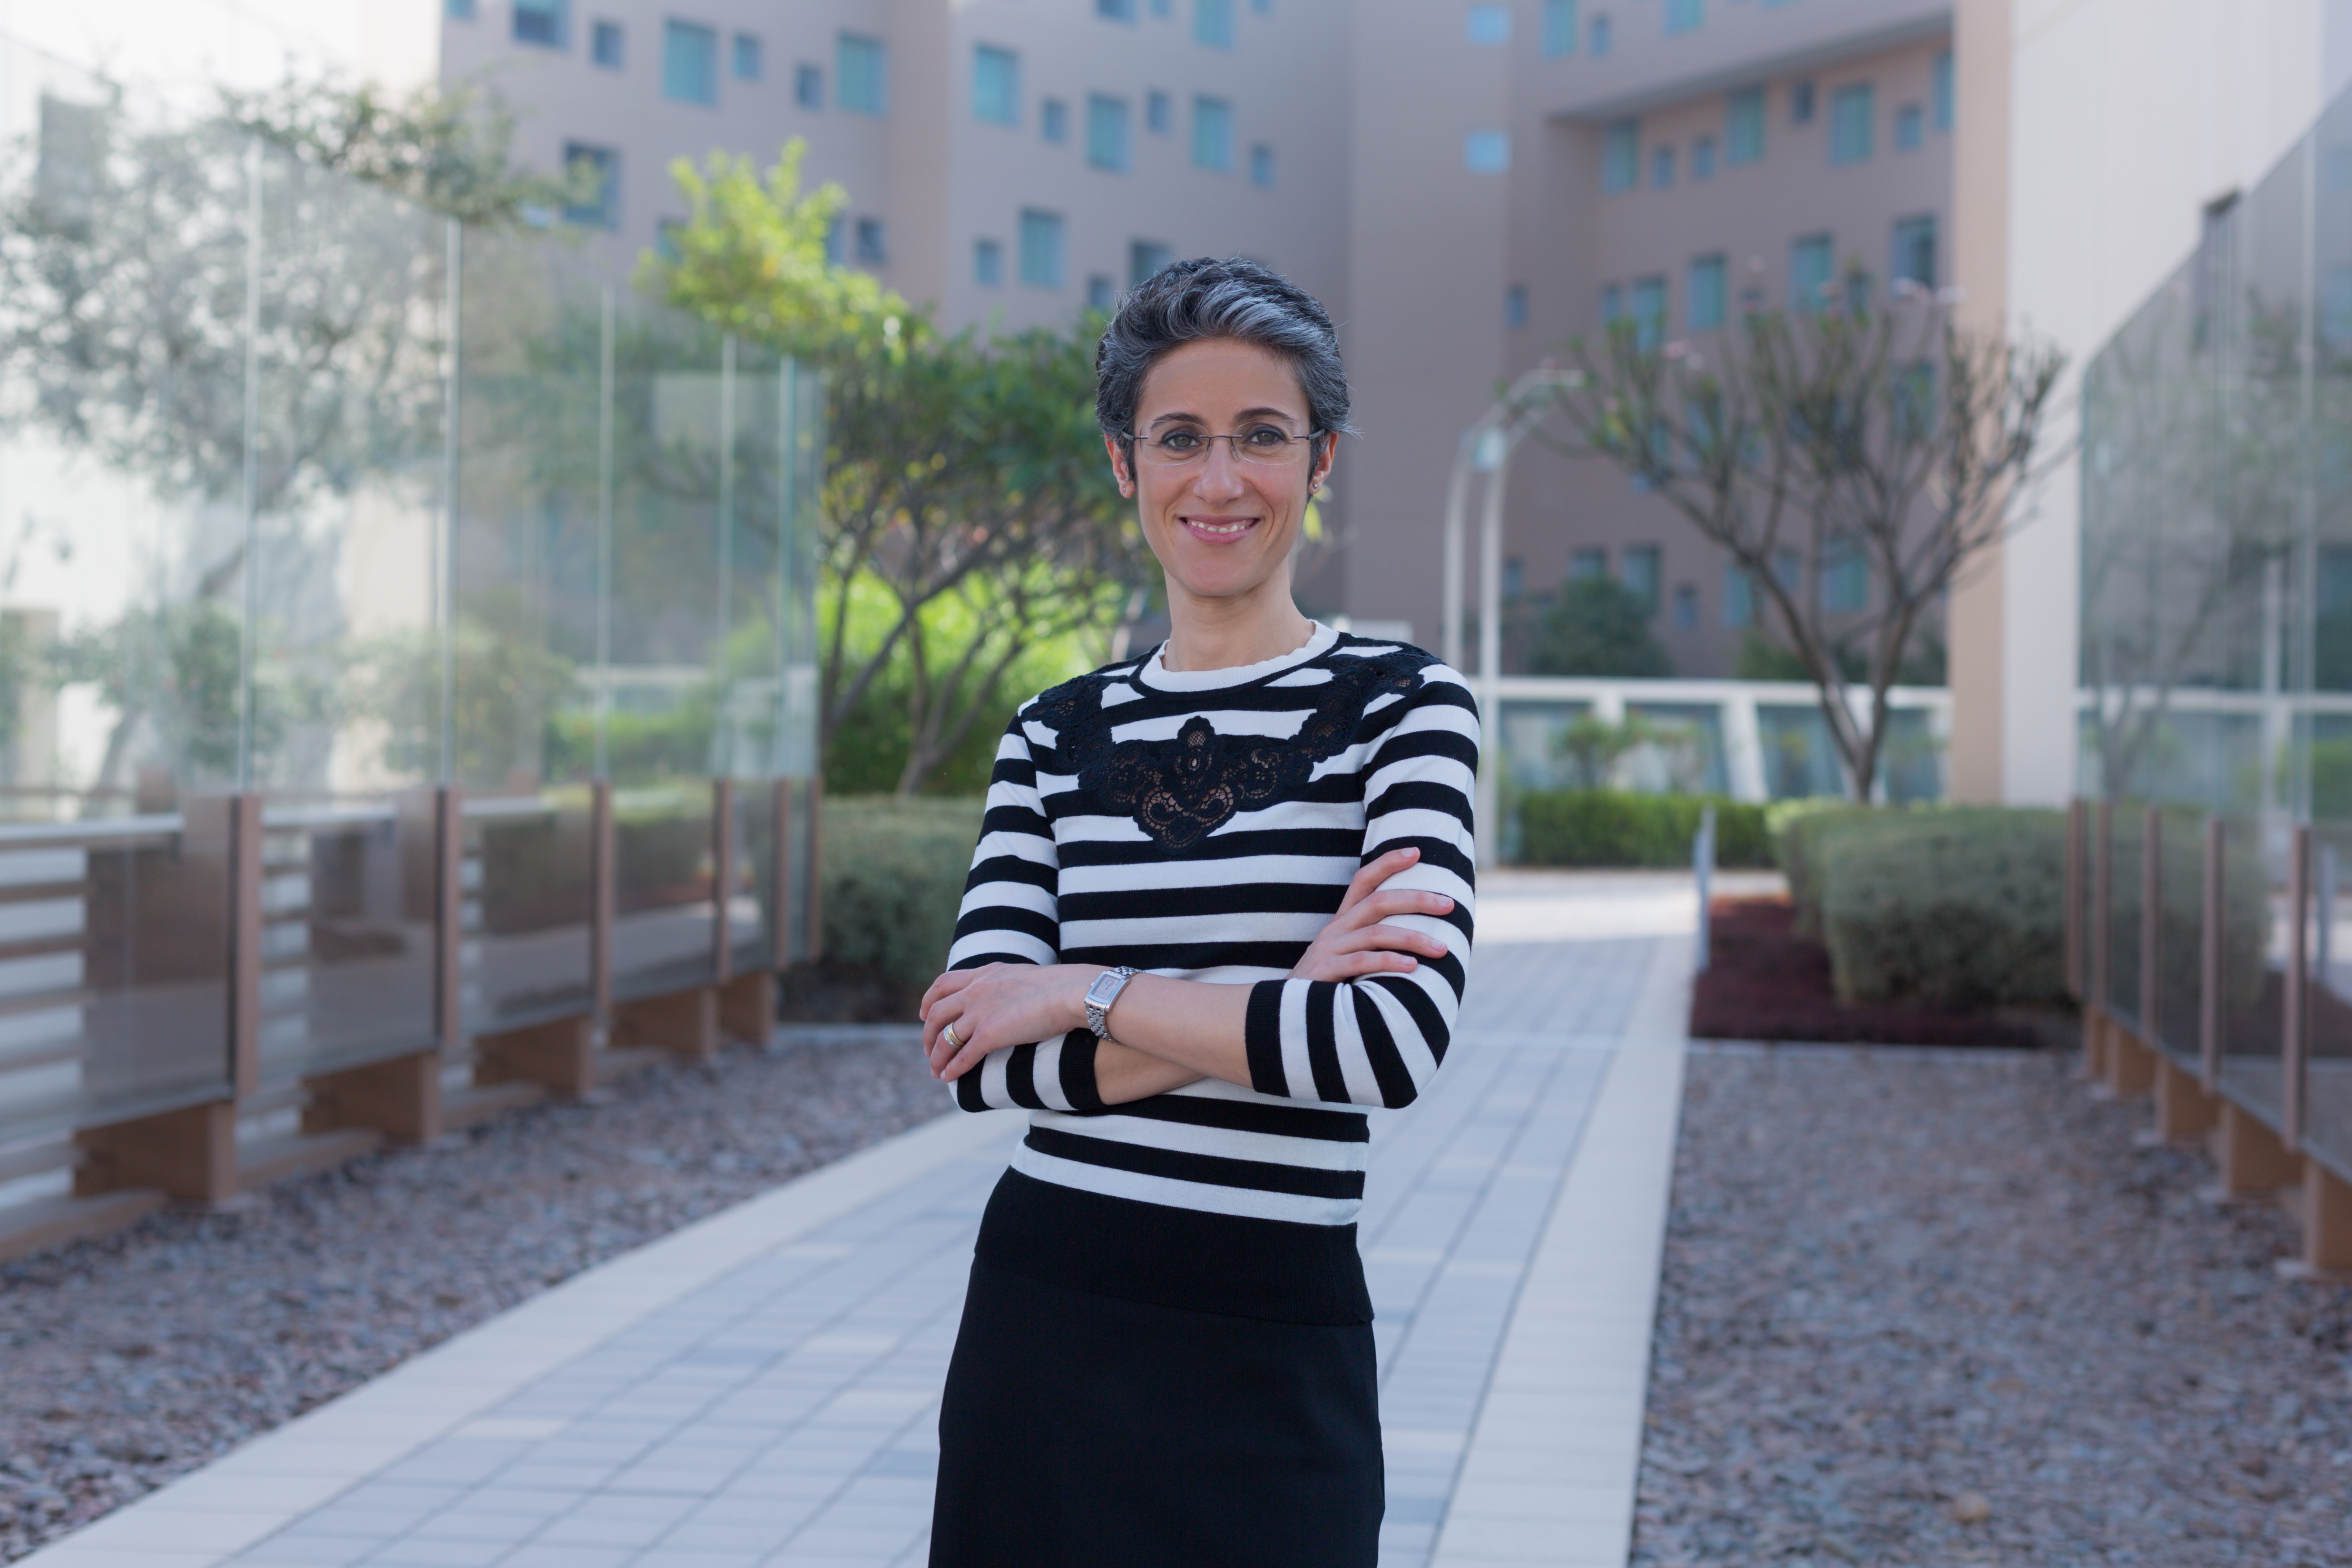 د. ليلى فاميليار محاضرة في جامعة نيويورك أبوظبي ومستشارة أكاديمية في مجال تعليم اللغة العربية. 